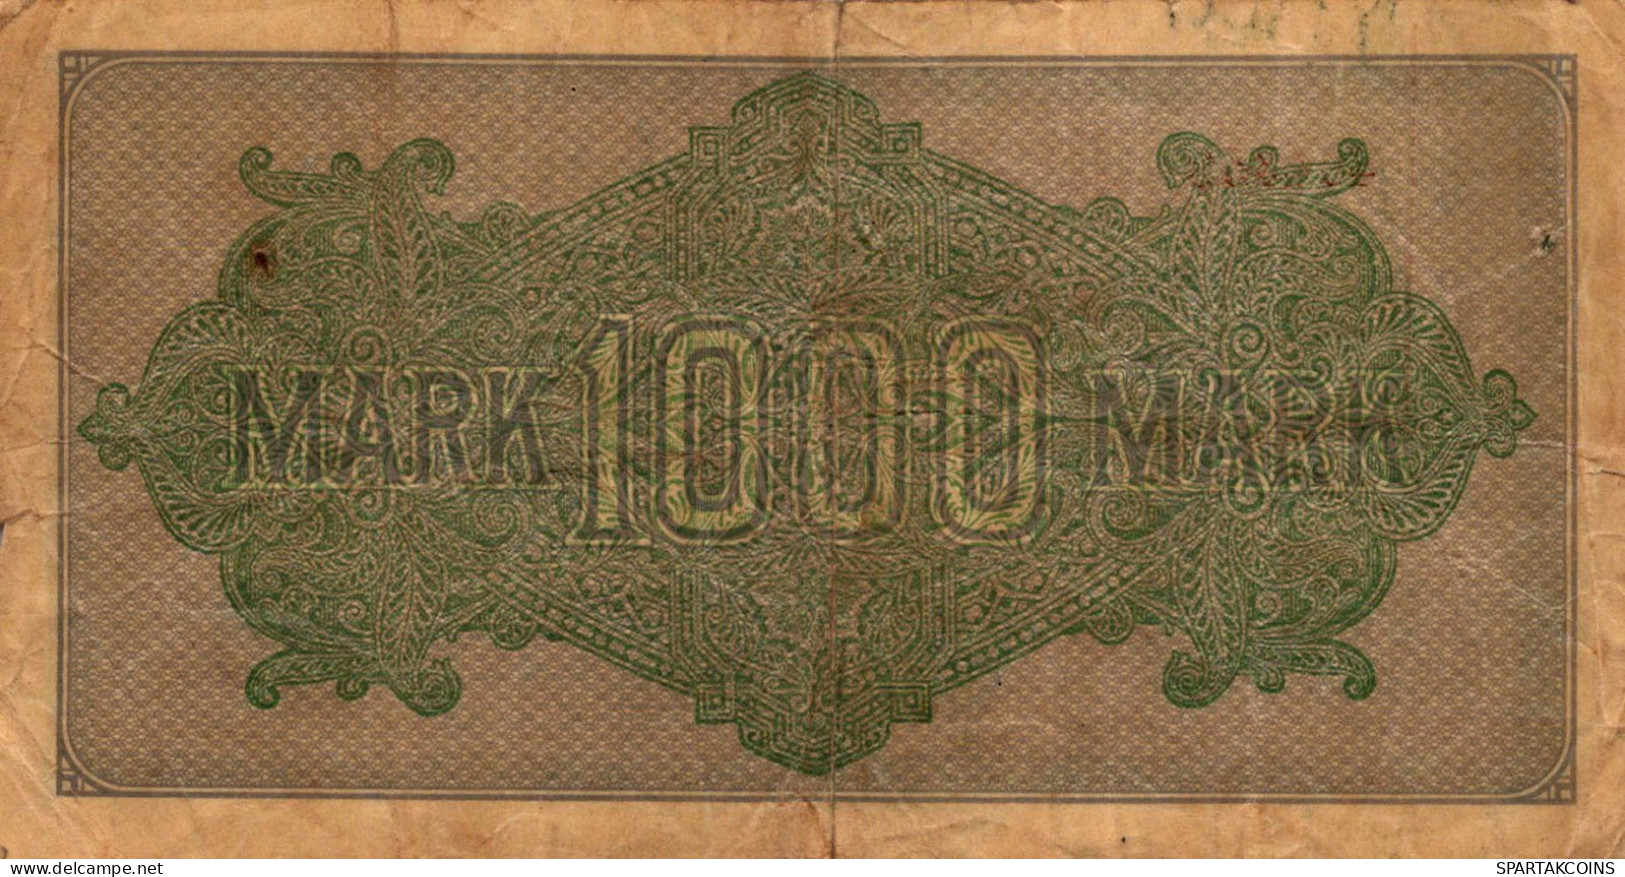 1000 MARK 1922 Stadt BERLIN DEUTSCHLAND Papiergeld Banknote #PL036 - Lokale Ausgaben